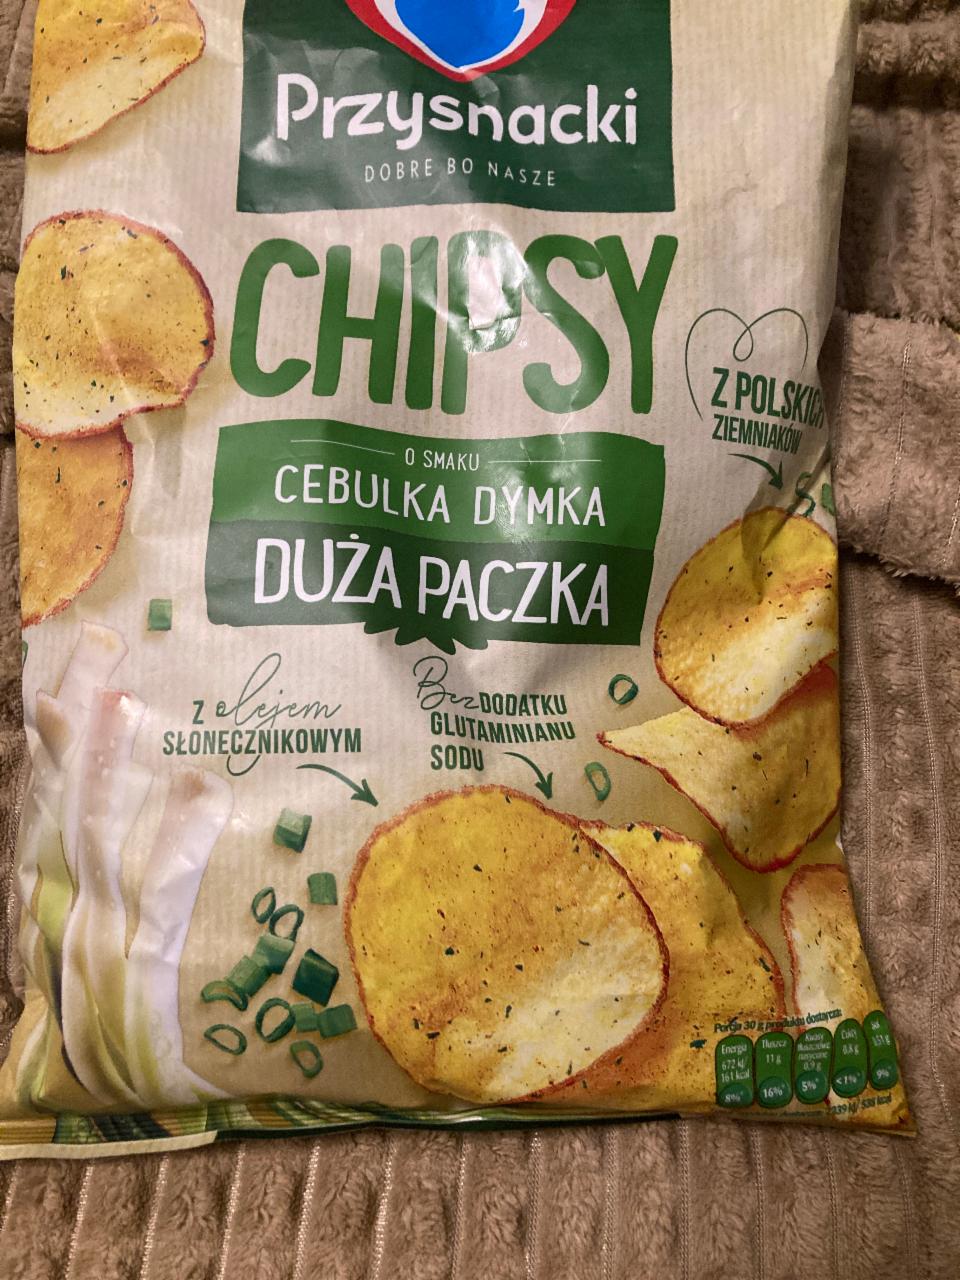 Фото - Chipsy o smaku cebulka dymka Przysnacki